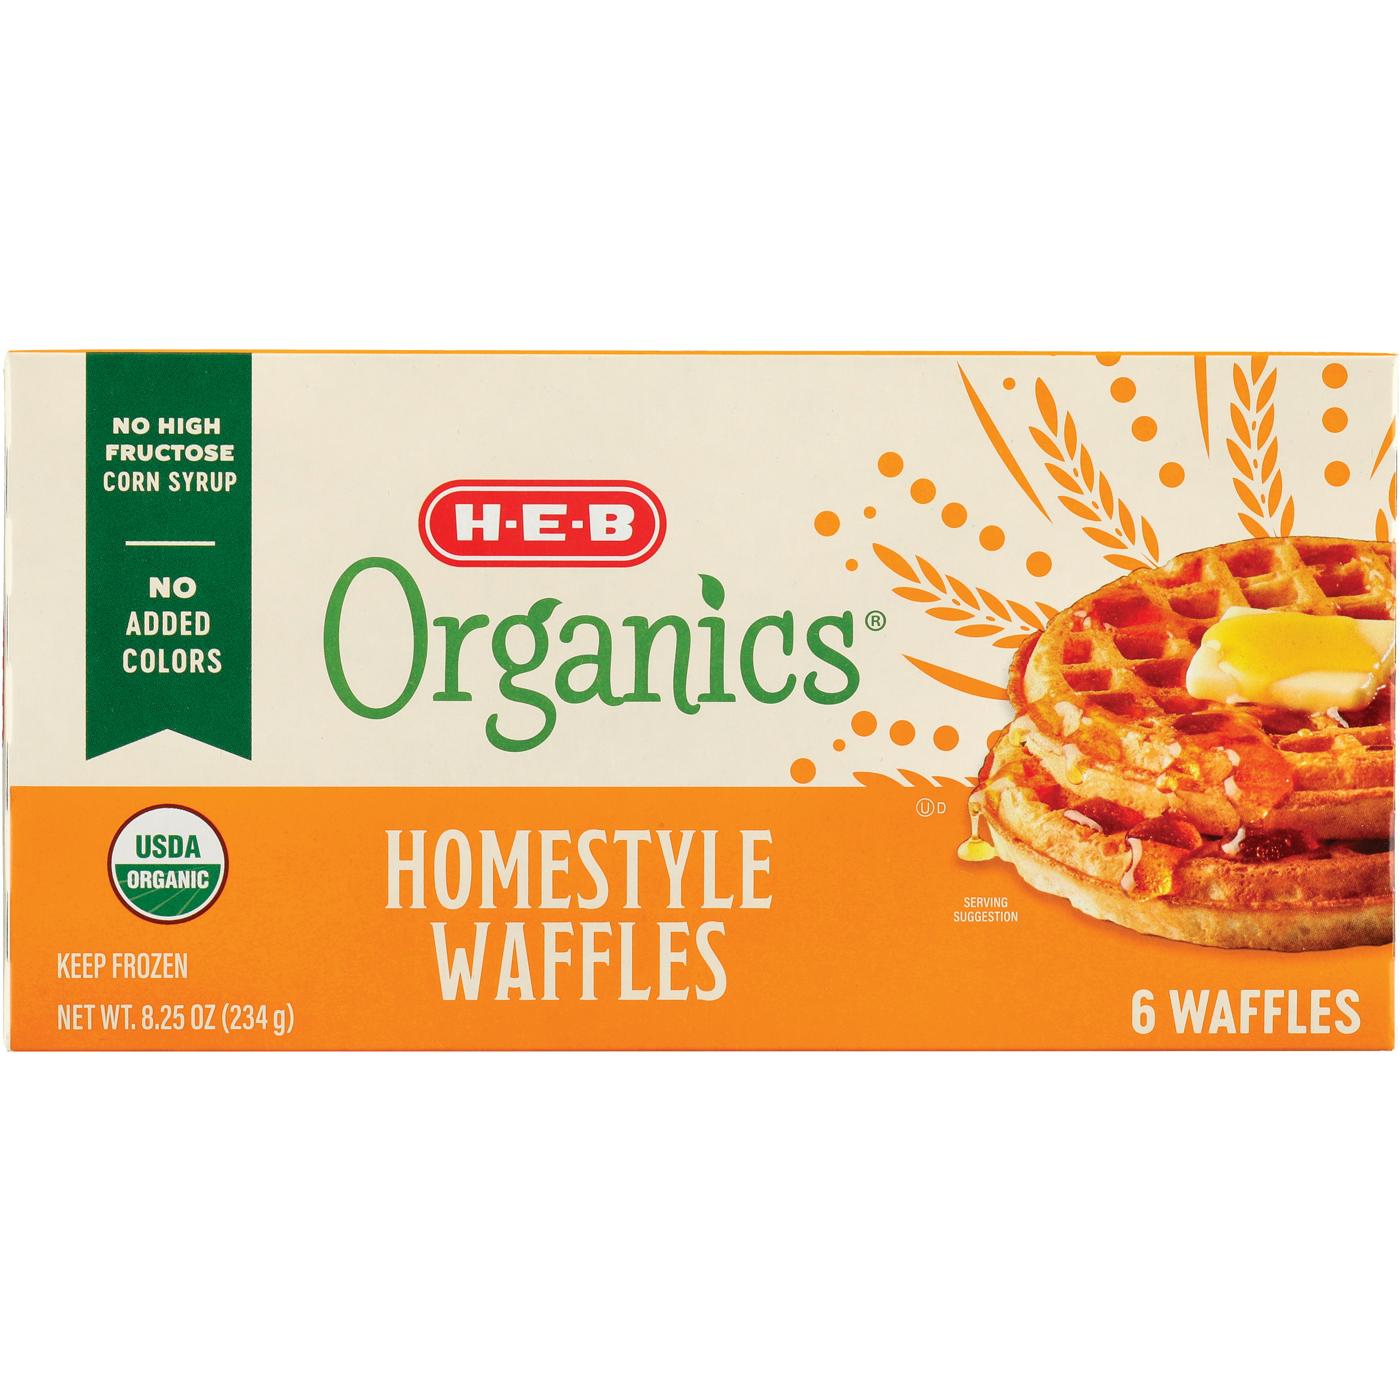 H-E-B Organics Frozen Waffles - Homestyle; image 1 of 2